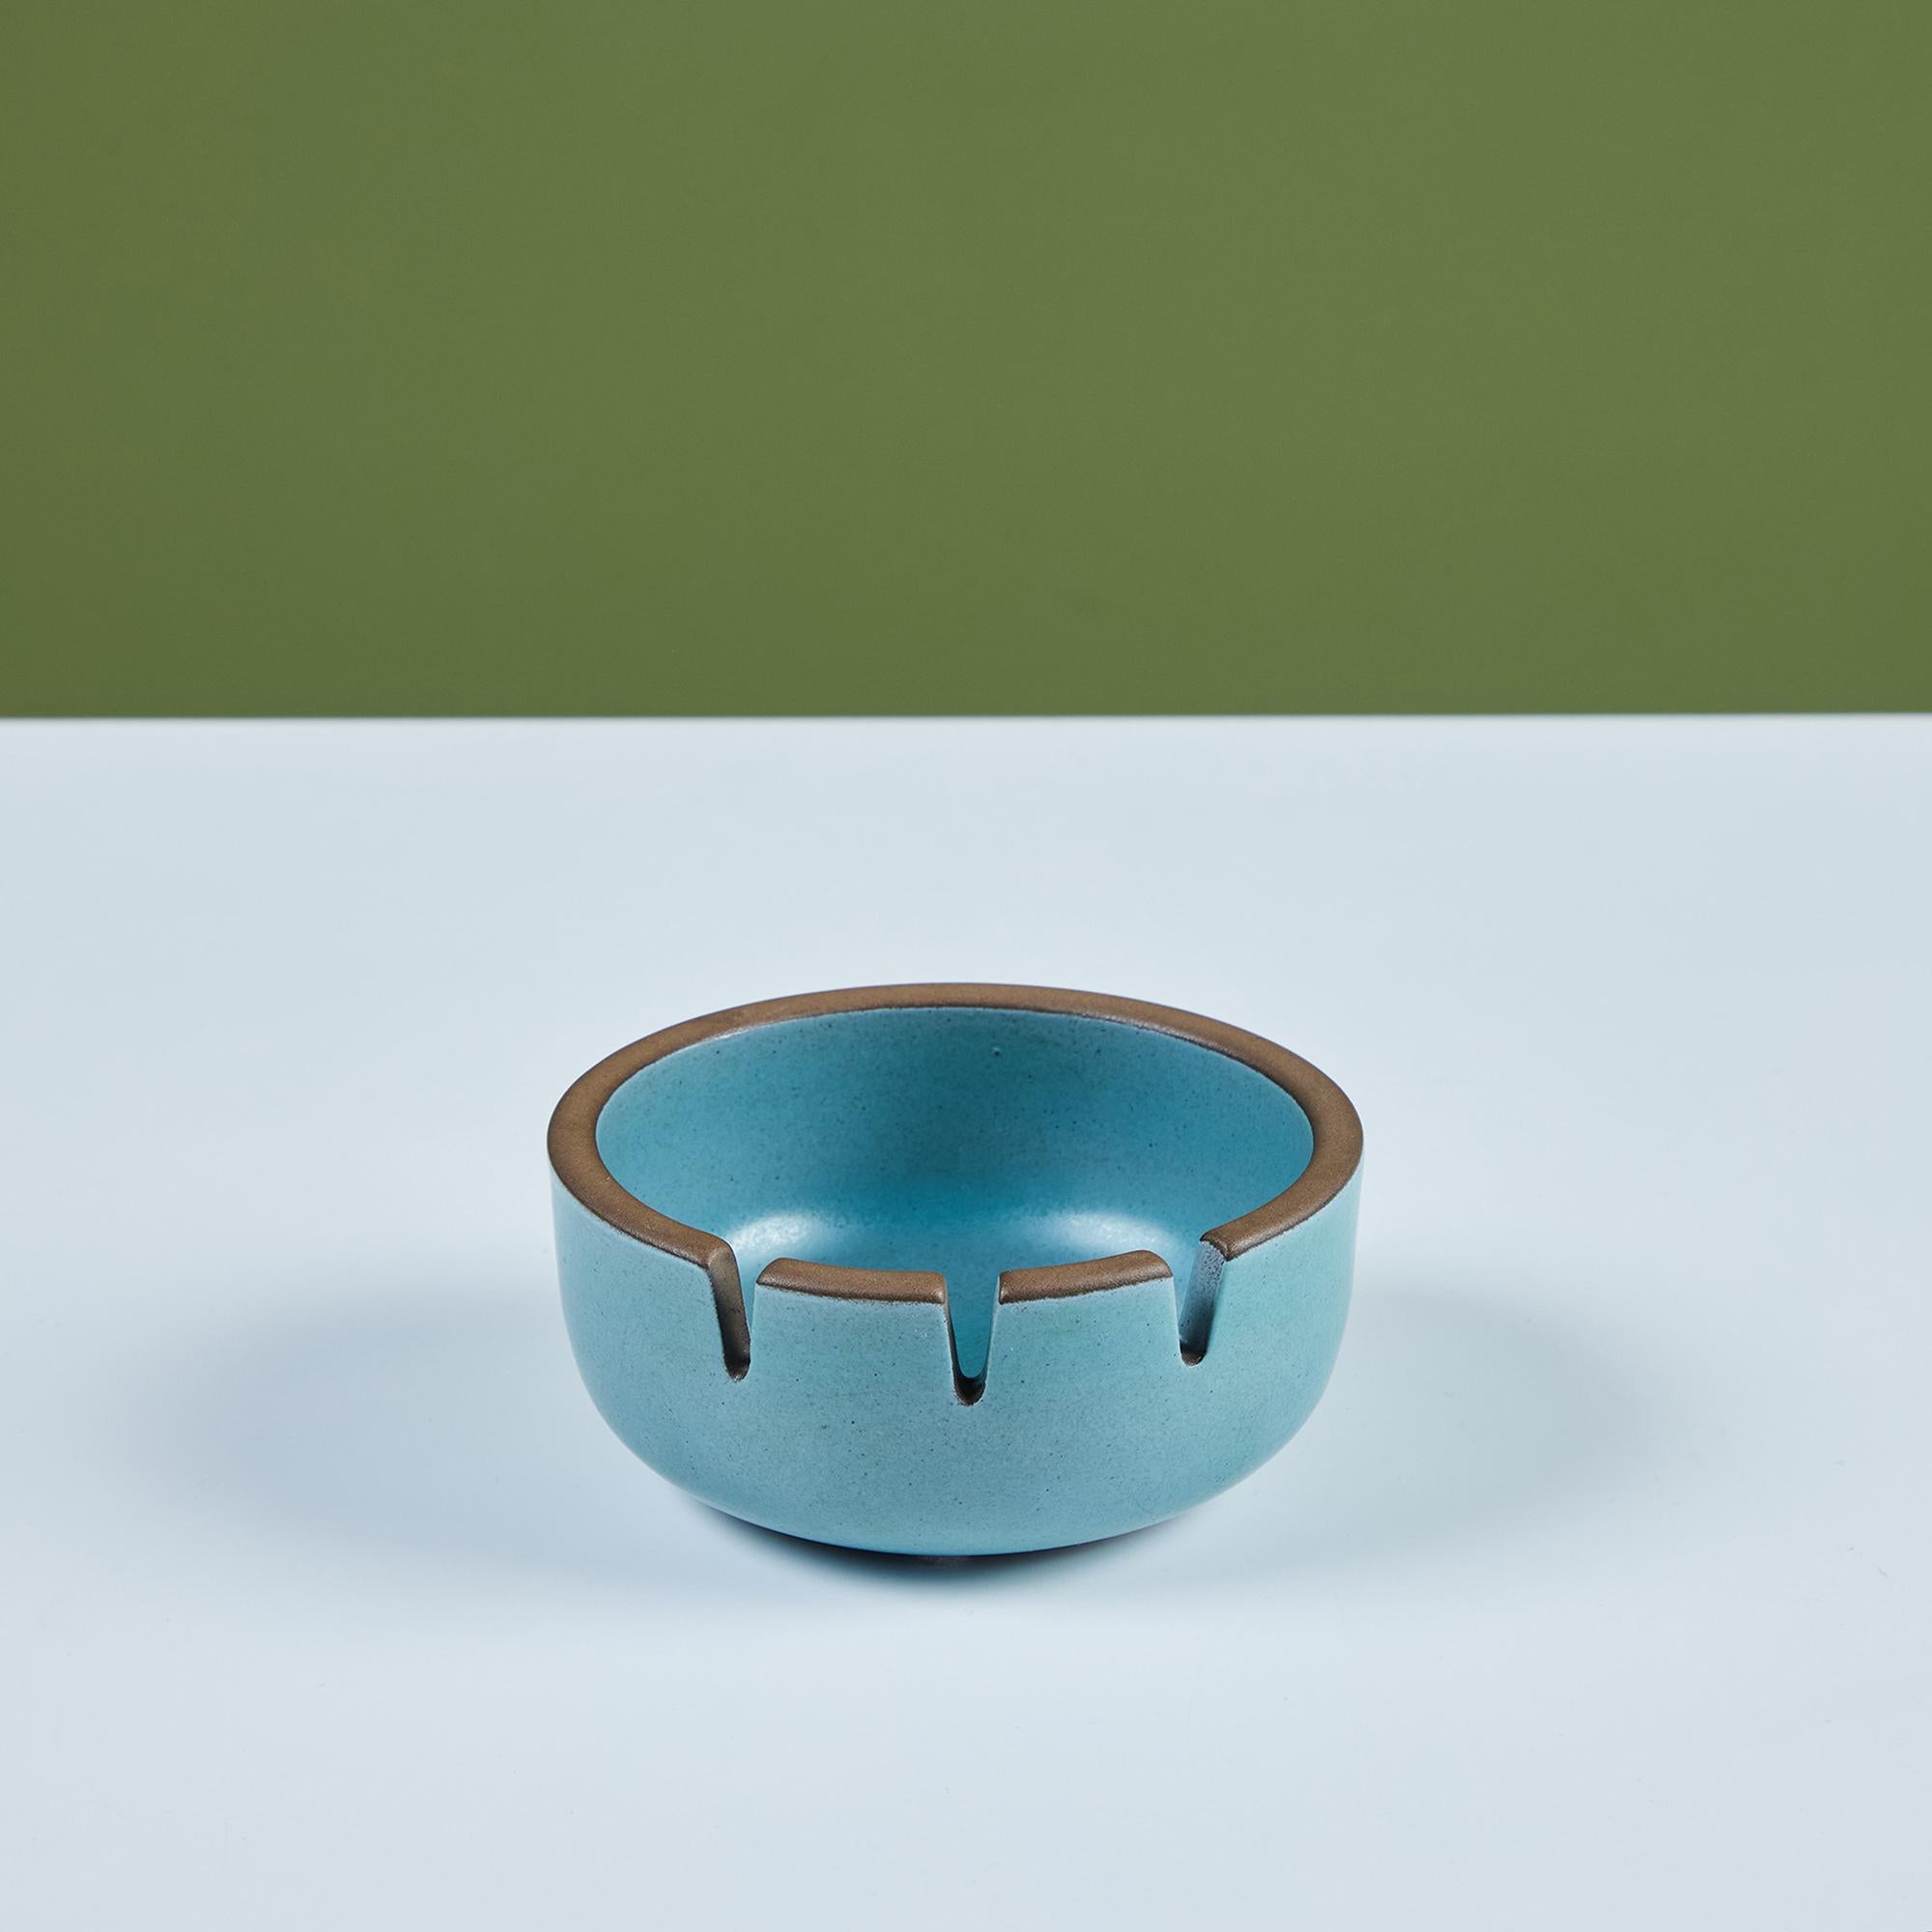 Cendrier en céramique émaillée de Heath Ceramics, c.1960s, USA. Le cendrier est recouvert d'une glaçure bleue à l'extérieur et à l'intérieur. Il y a trois emplacements pour les cigarettes. Peut également servir de fourre-tout décoratif ou de